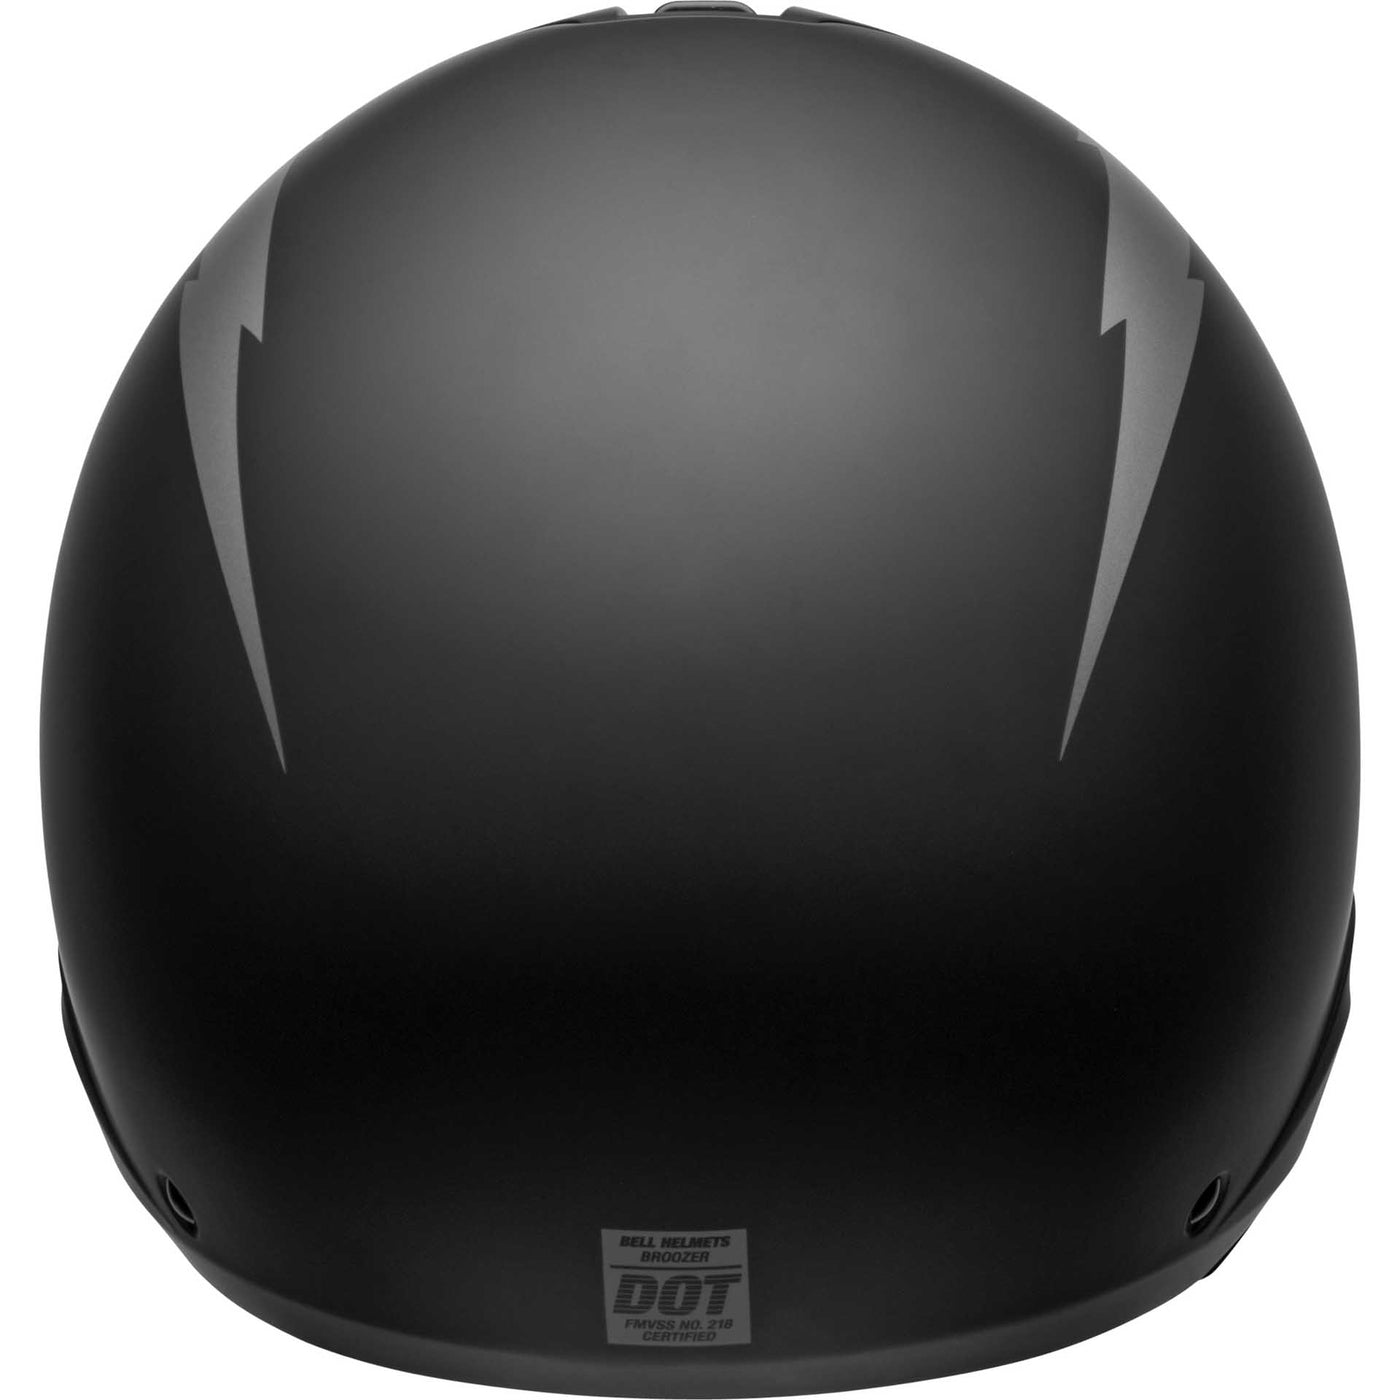 Bell Broozer Motorcycle Full Face Helmet Arc Matte Black/Gray